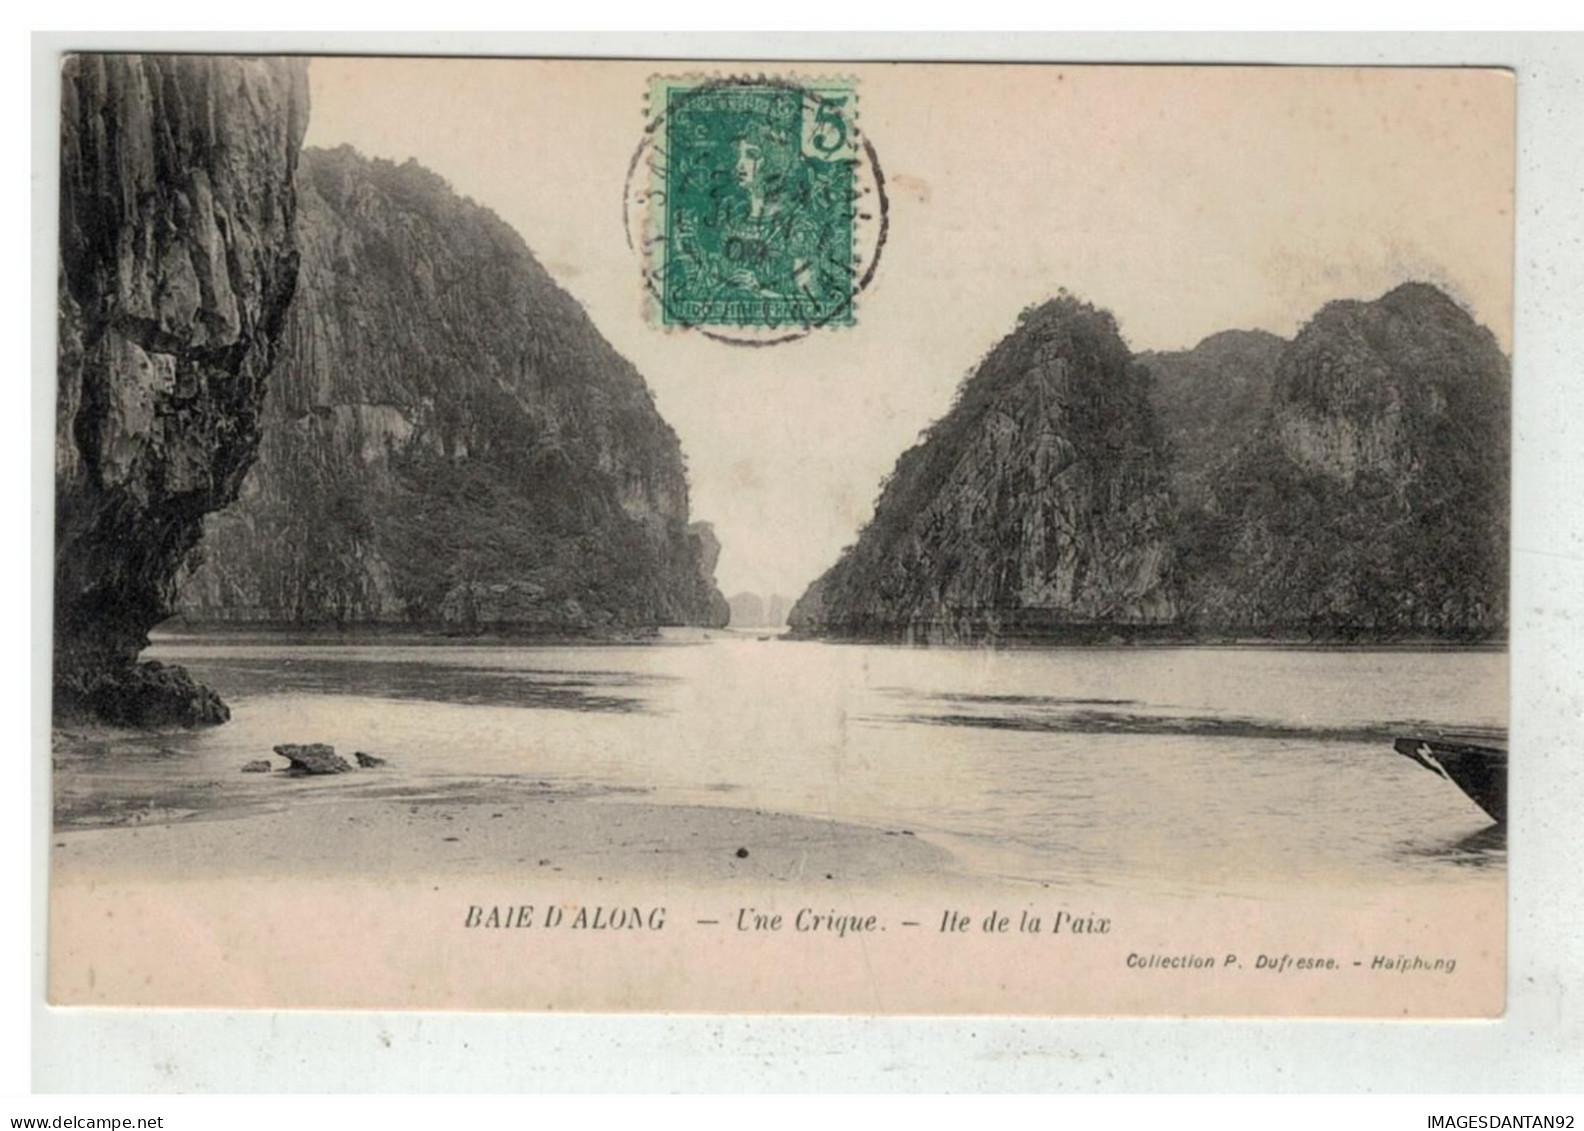 TONKIN INDOCHINE VIETNAM SAIGON #18631 BAIE D ALONG UNE CRIQUE ILE DE LA PAIX - Viêt-Nam